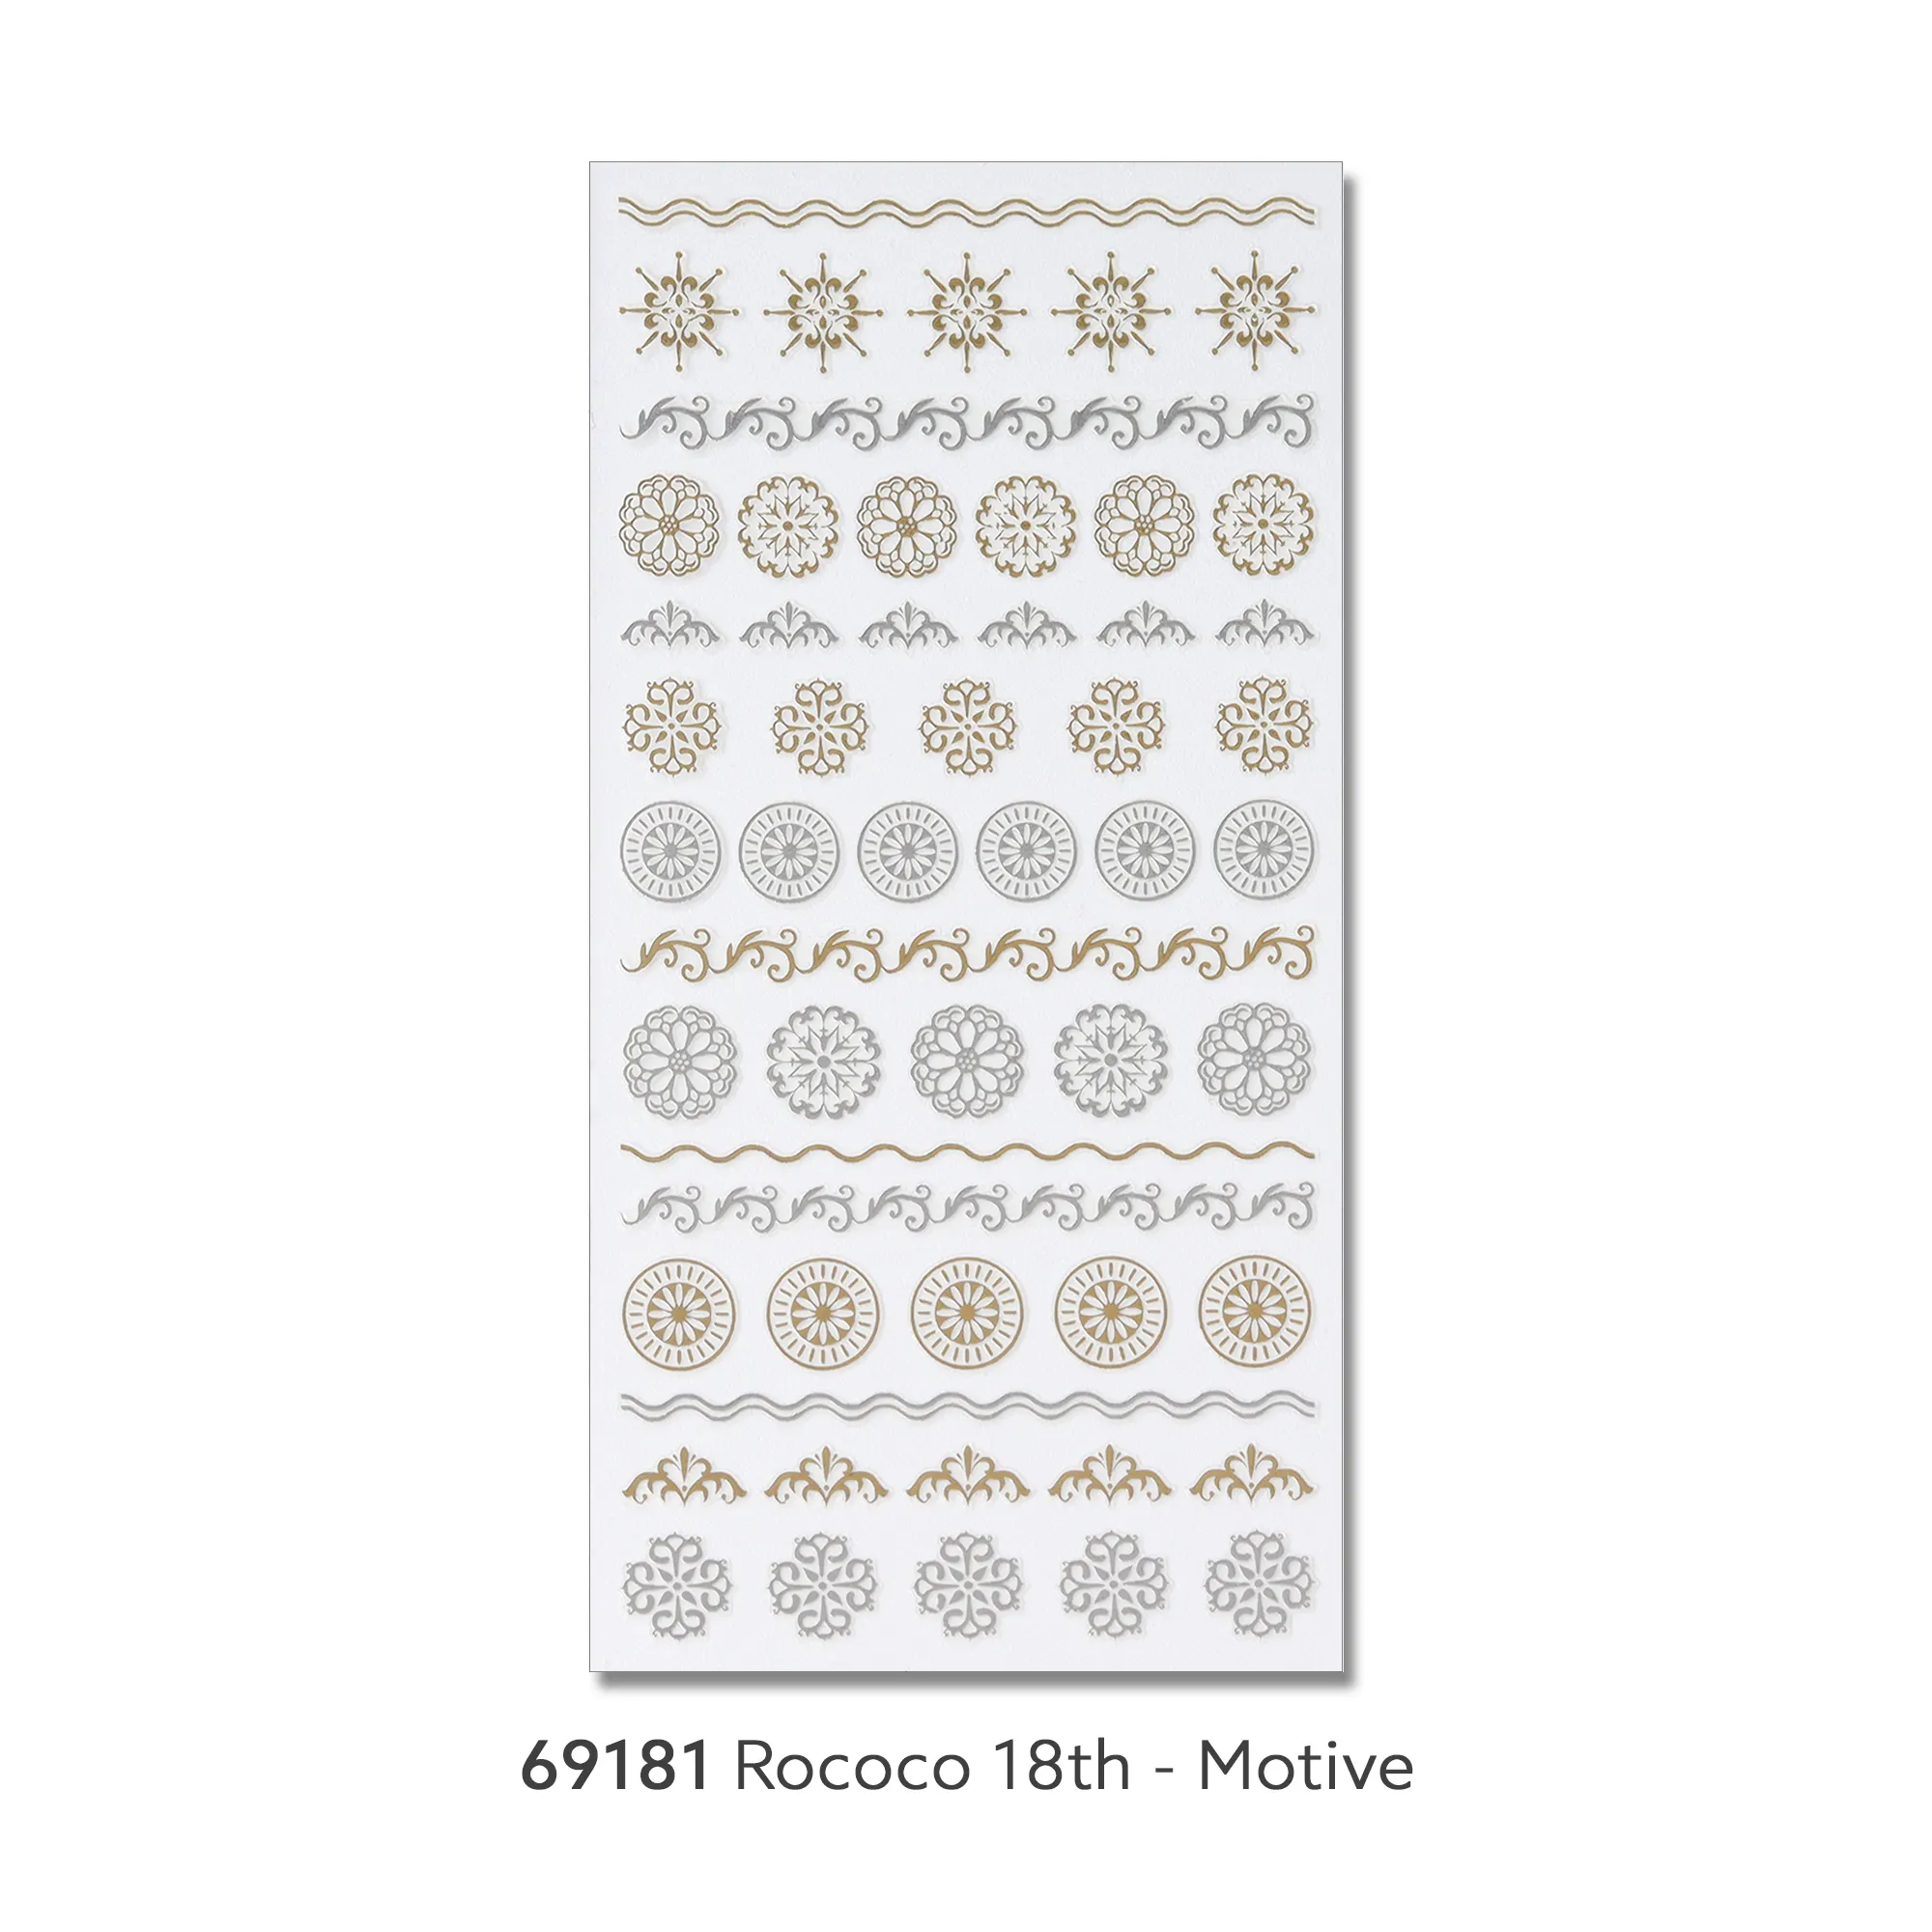 Rococo 18th #69181モーティブオリエンタルネイルアートステッカープロフェッショナルラグジュアリーゴールドシルバーフォイルライン3Dエンボス韓国oem odm